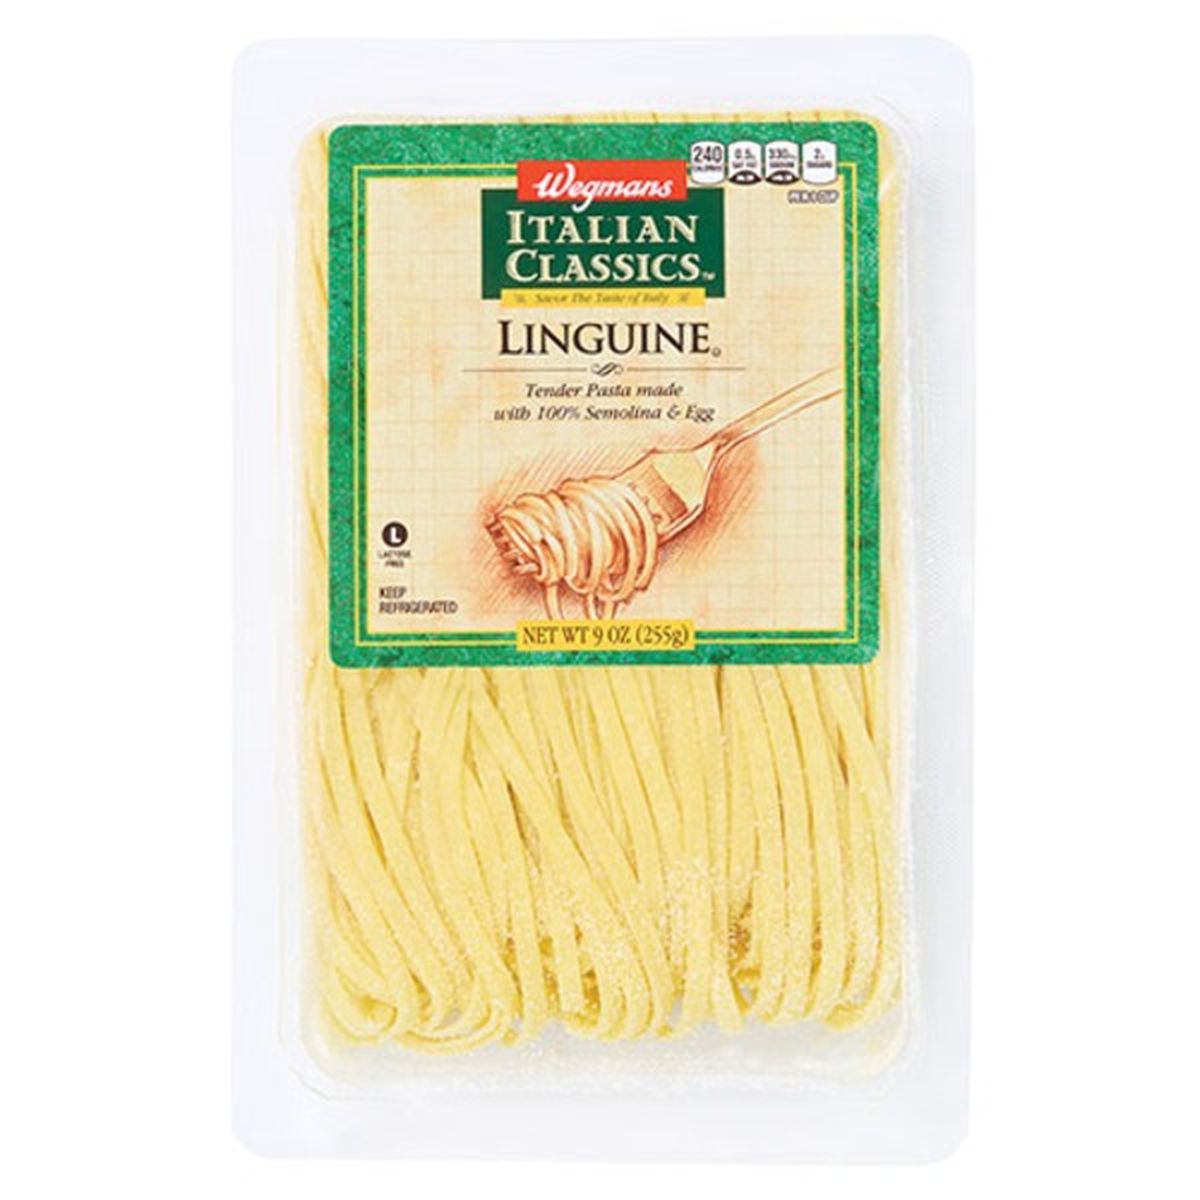 Calories in Wegmans Italian Classics Linguine Pasta